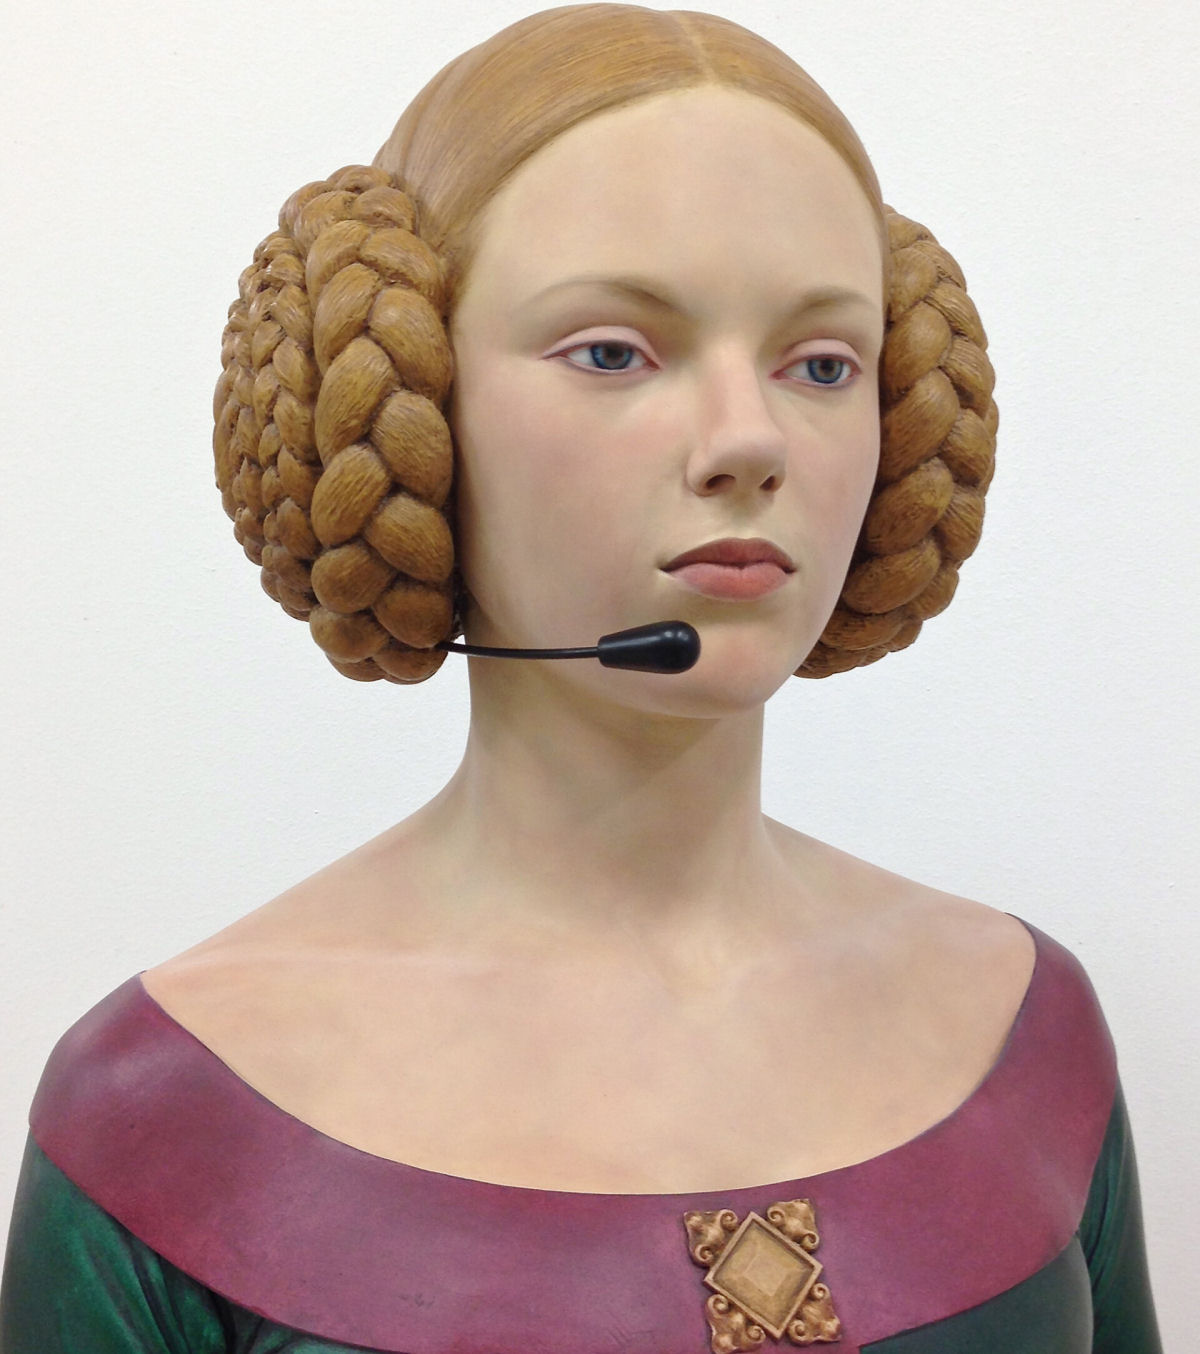 Ousados bustos femininos são esculpidos com um toque contemporâneo e atrevido por um artista espanhol 03